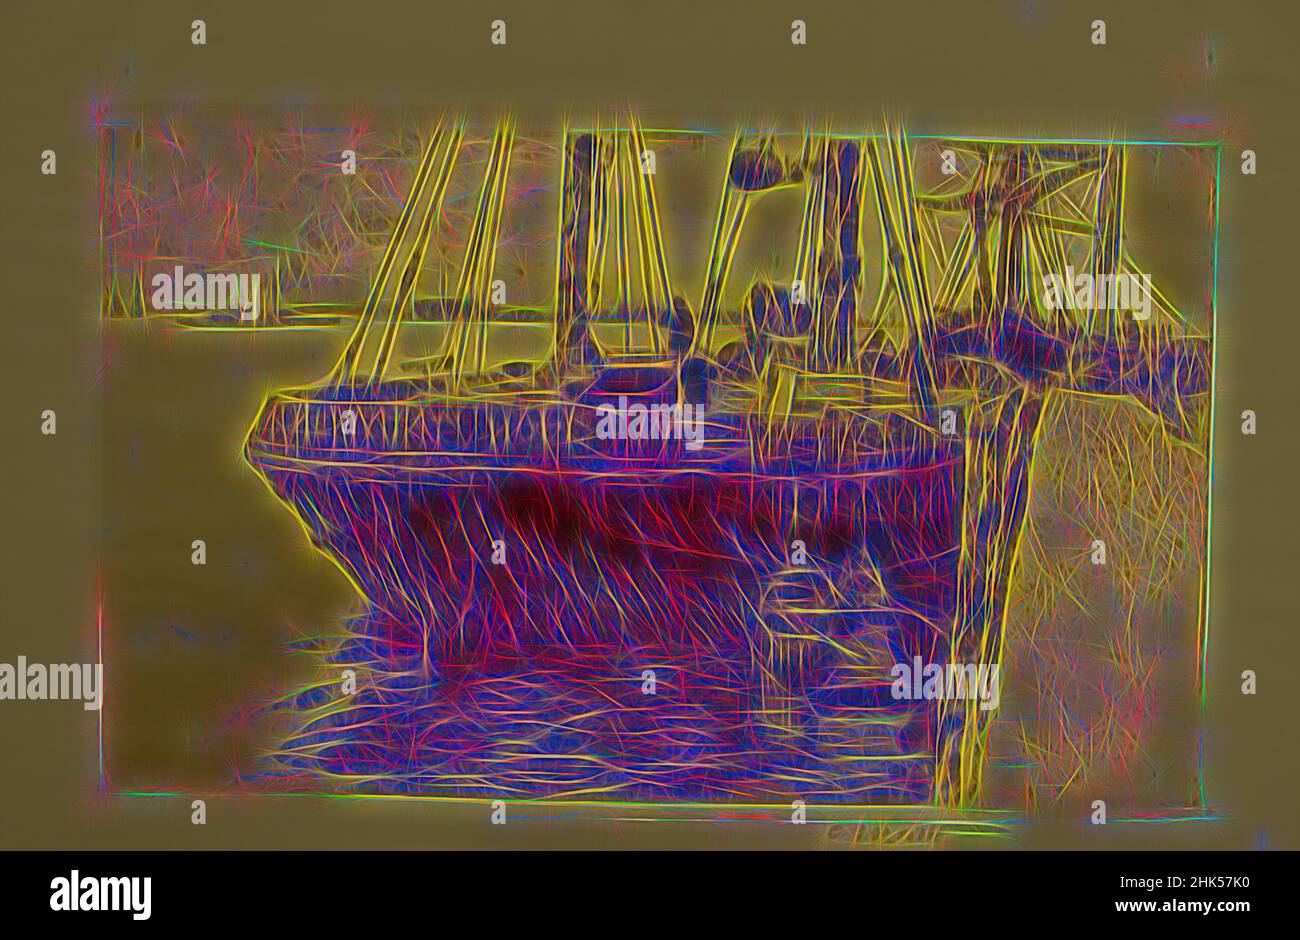 Ispirato dallo Schooner, Charles Adams Platt, americano, 1861-1933, incisione su carta di Wove, 19th secolo, foglio: 10 5/16 x 13 1/2 in., 26,2 x 34,3 cm, barca, navale, riflessione, nave, Reinventato da Artotop. L'arte classica reinventata con un tocco moderno. Design di calda e allegra luminosità e di raggi di luce. La fotografia si ispira al surrealismo e al futurismo, abbracciando l'energia dinamica della tecnologia moderna, del movimento, della velocità e rivoluzionando la cultura Foto Stock